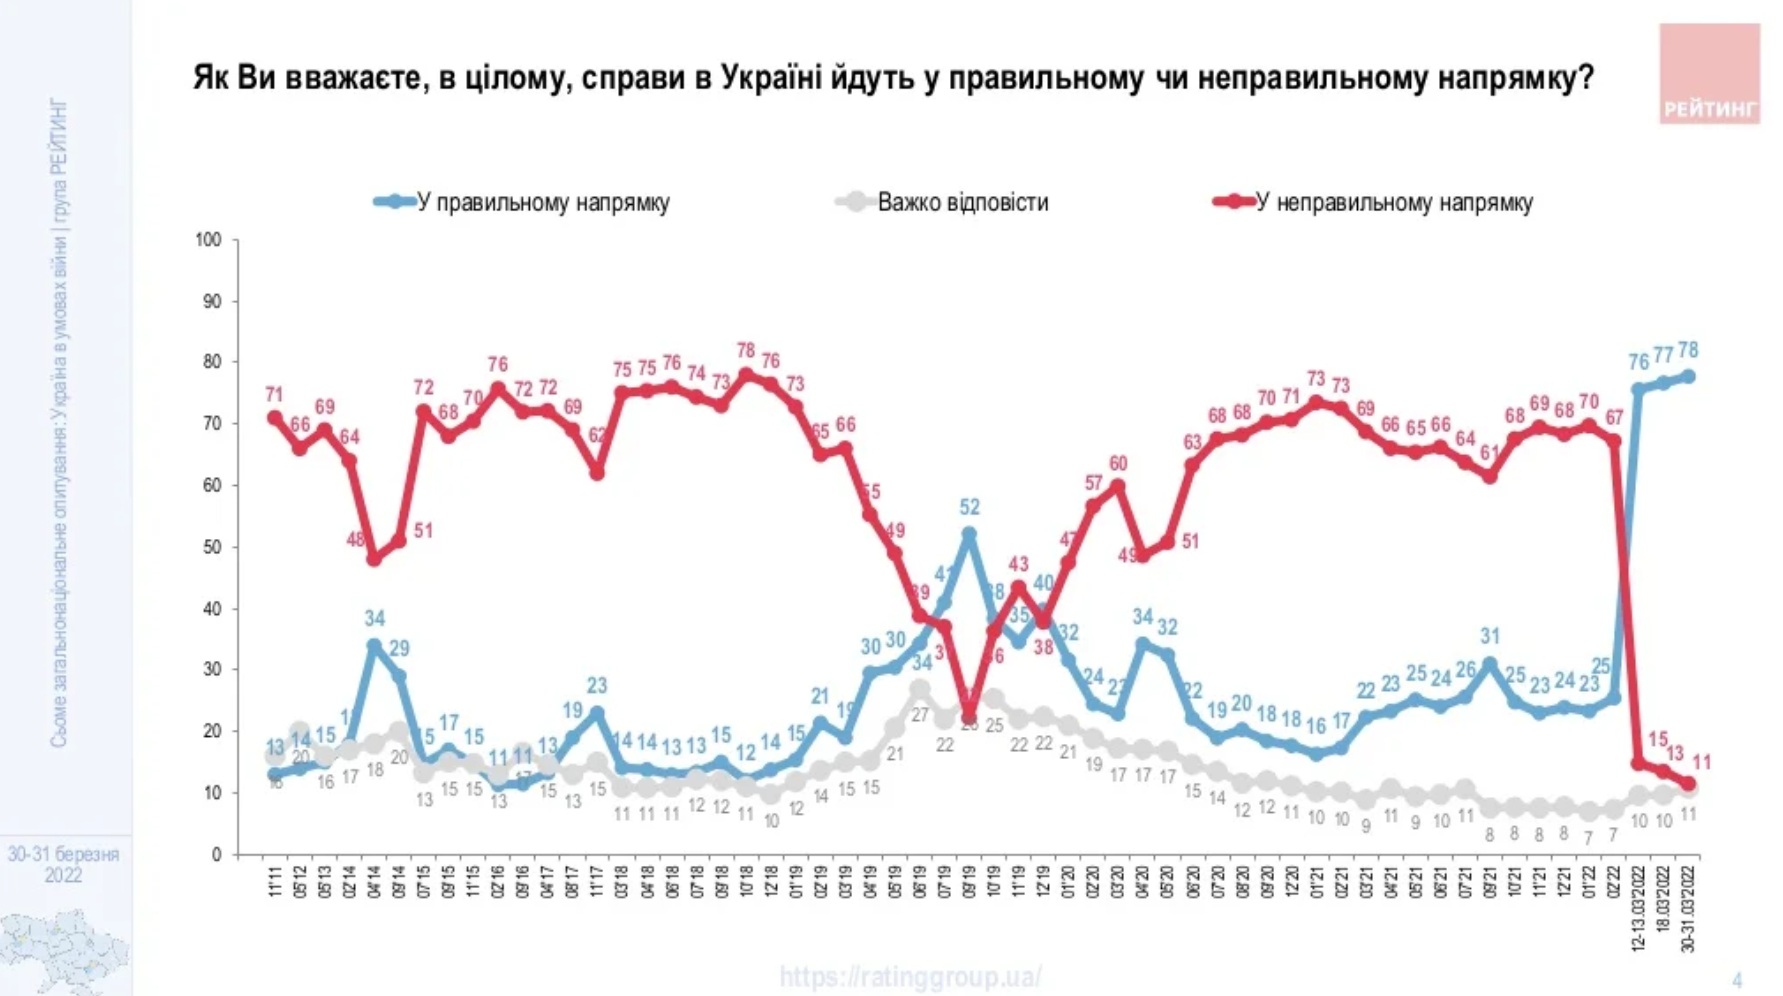 Украинцы считают, что государство движется в правильном направлении.